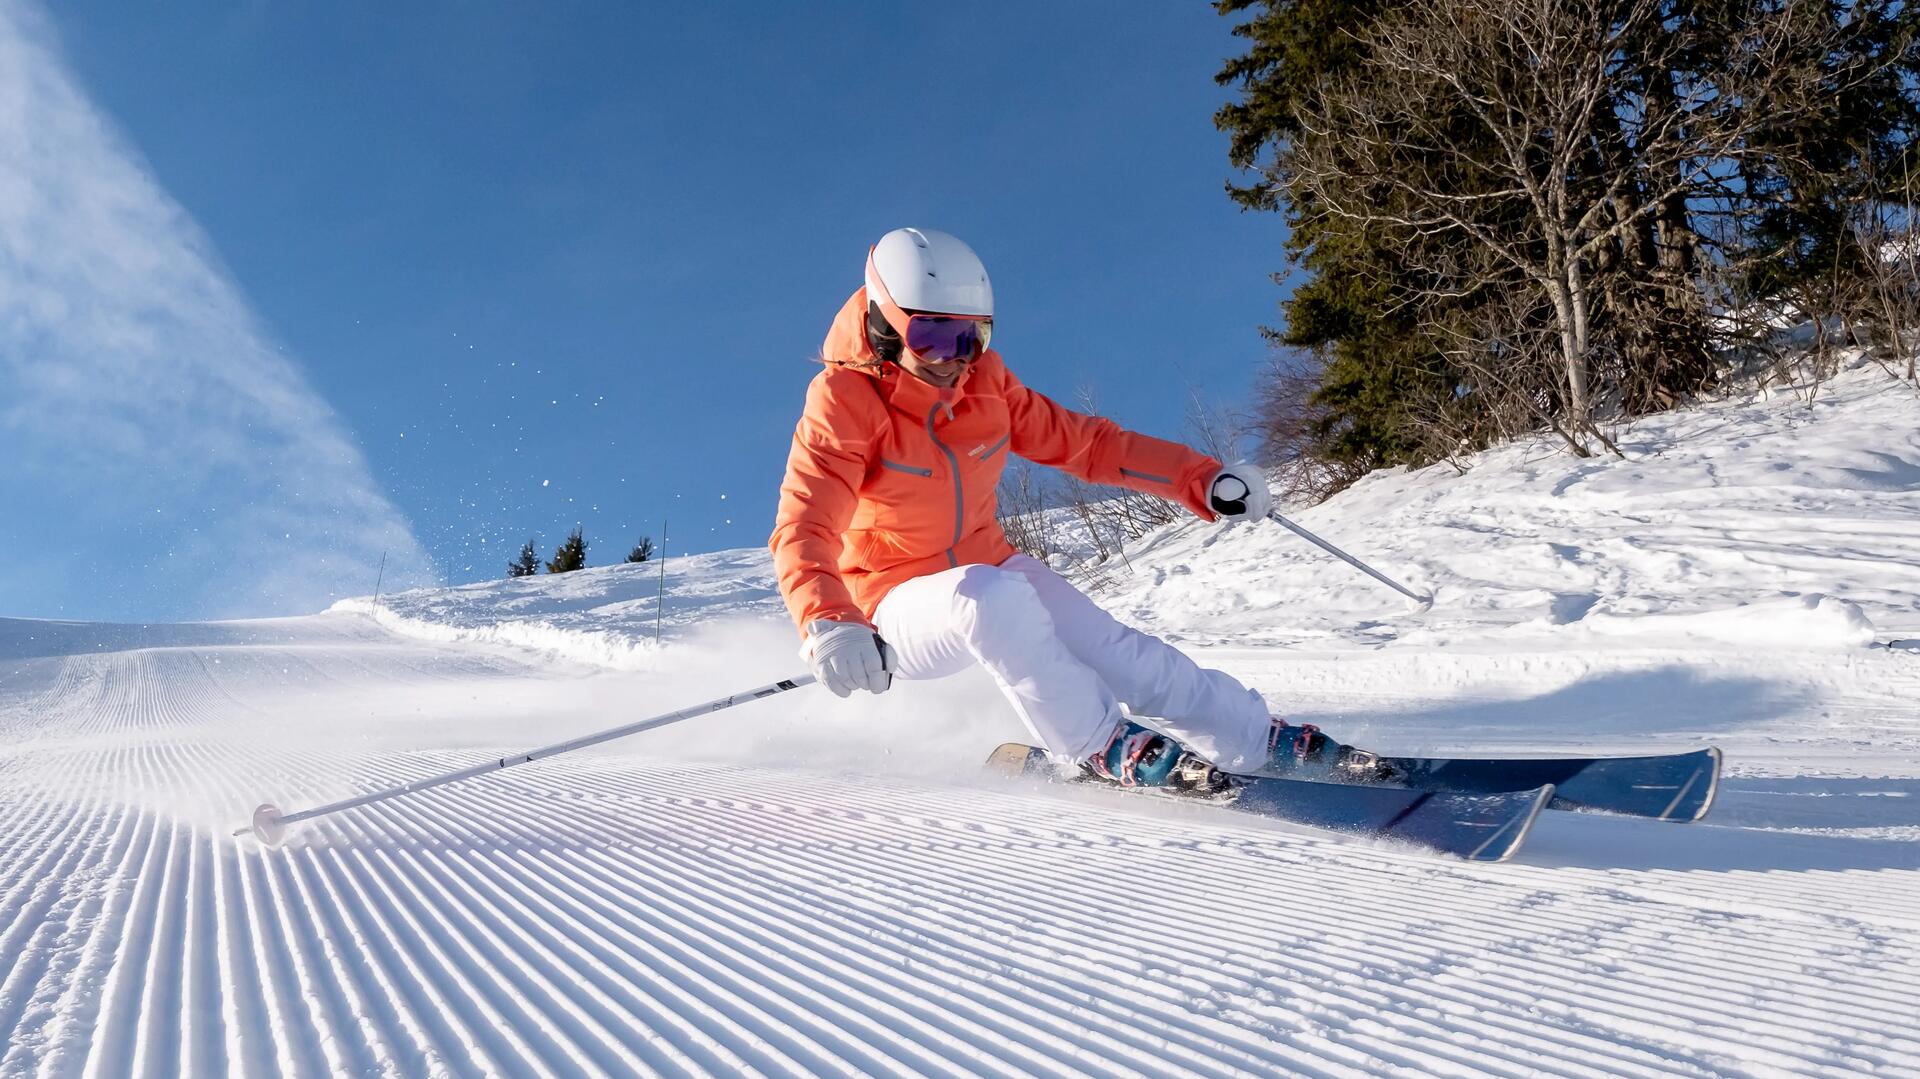 skis boost 580 wedze